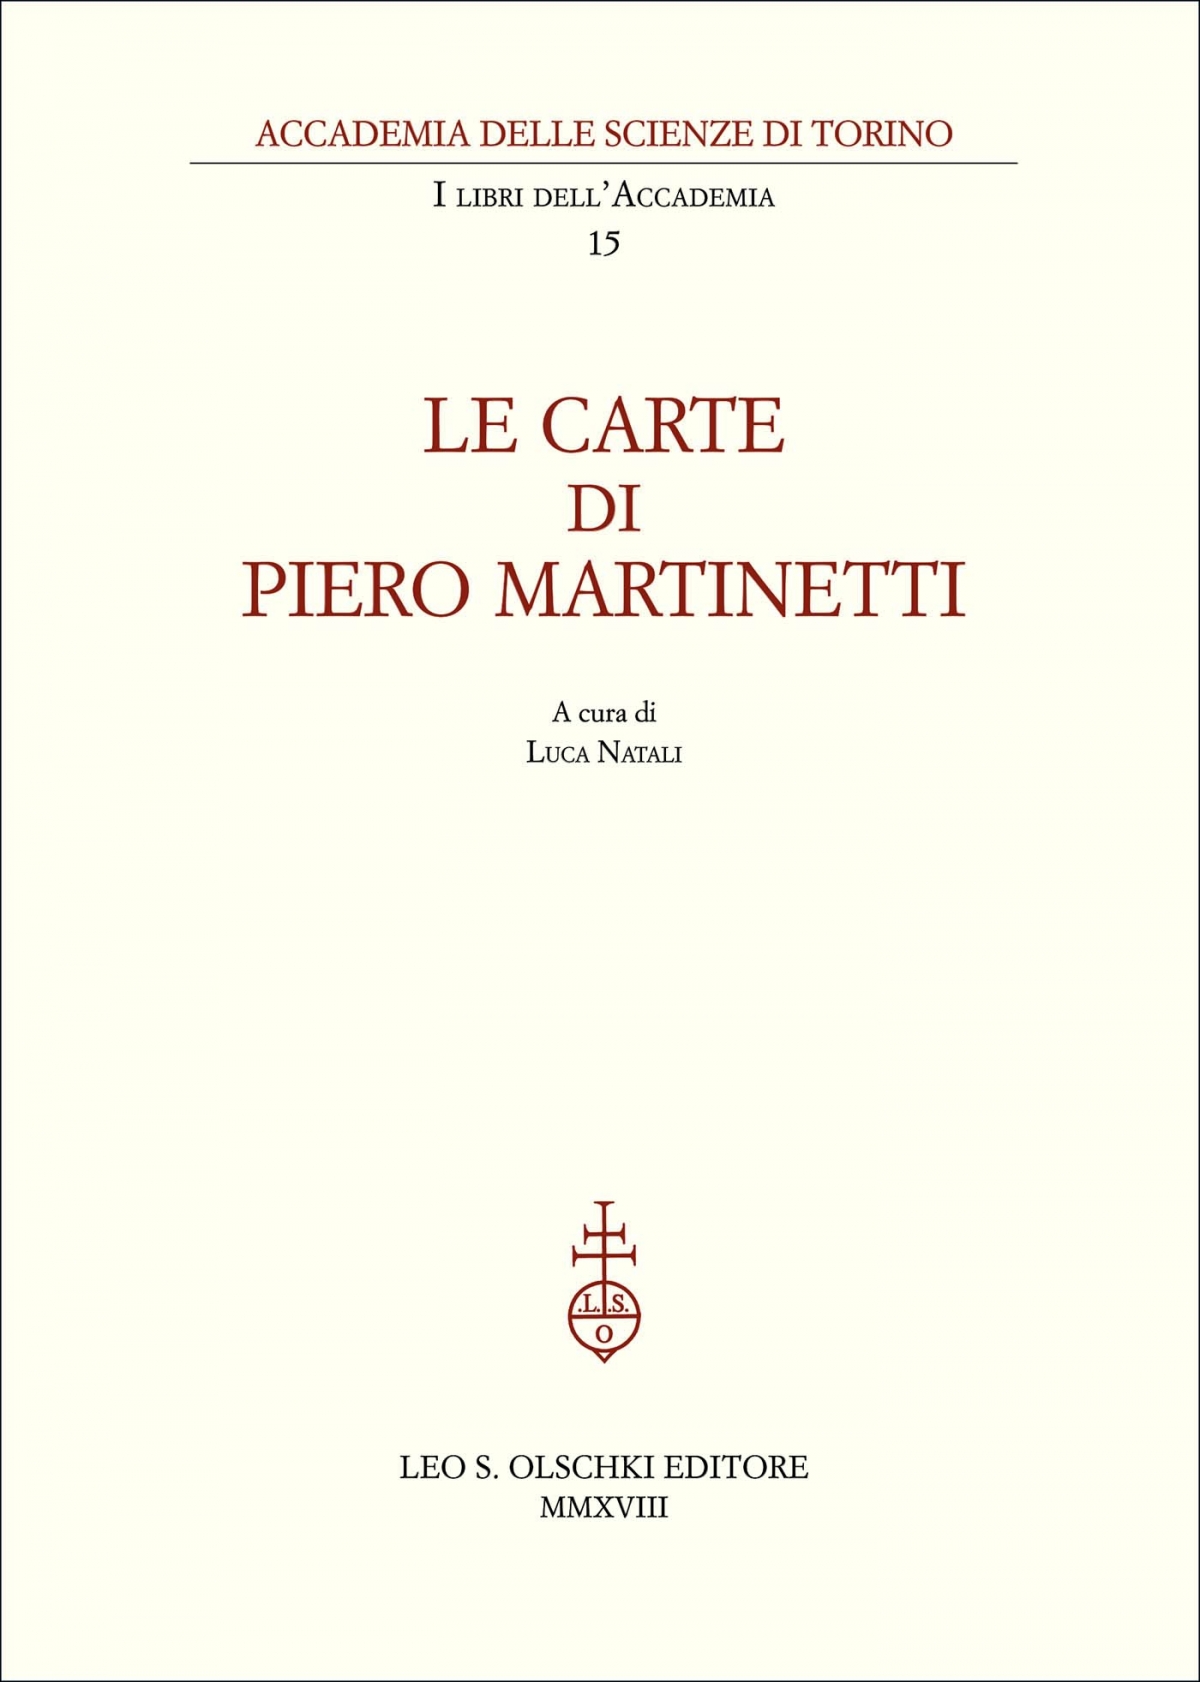 Le carte di Piero Martinetti